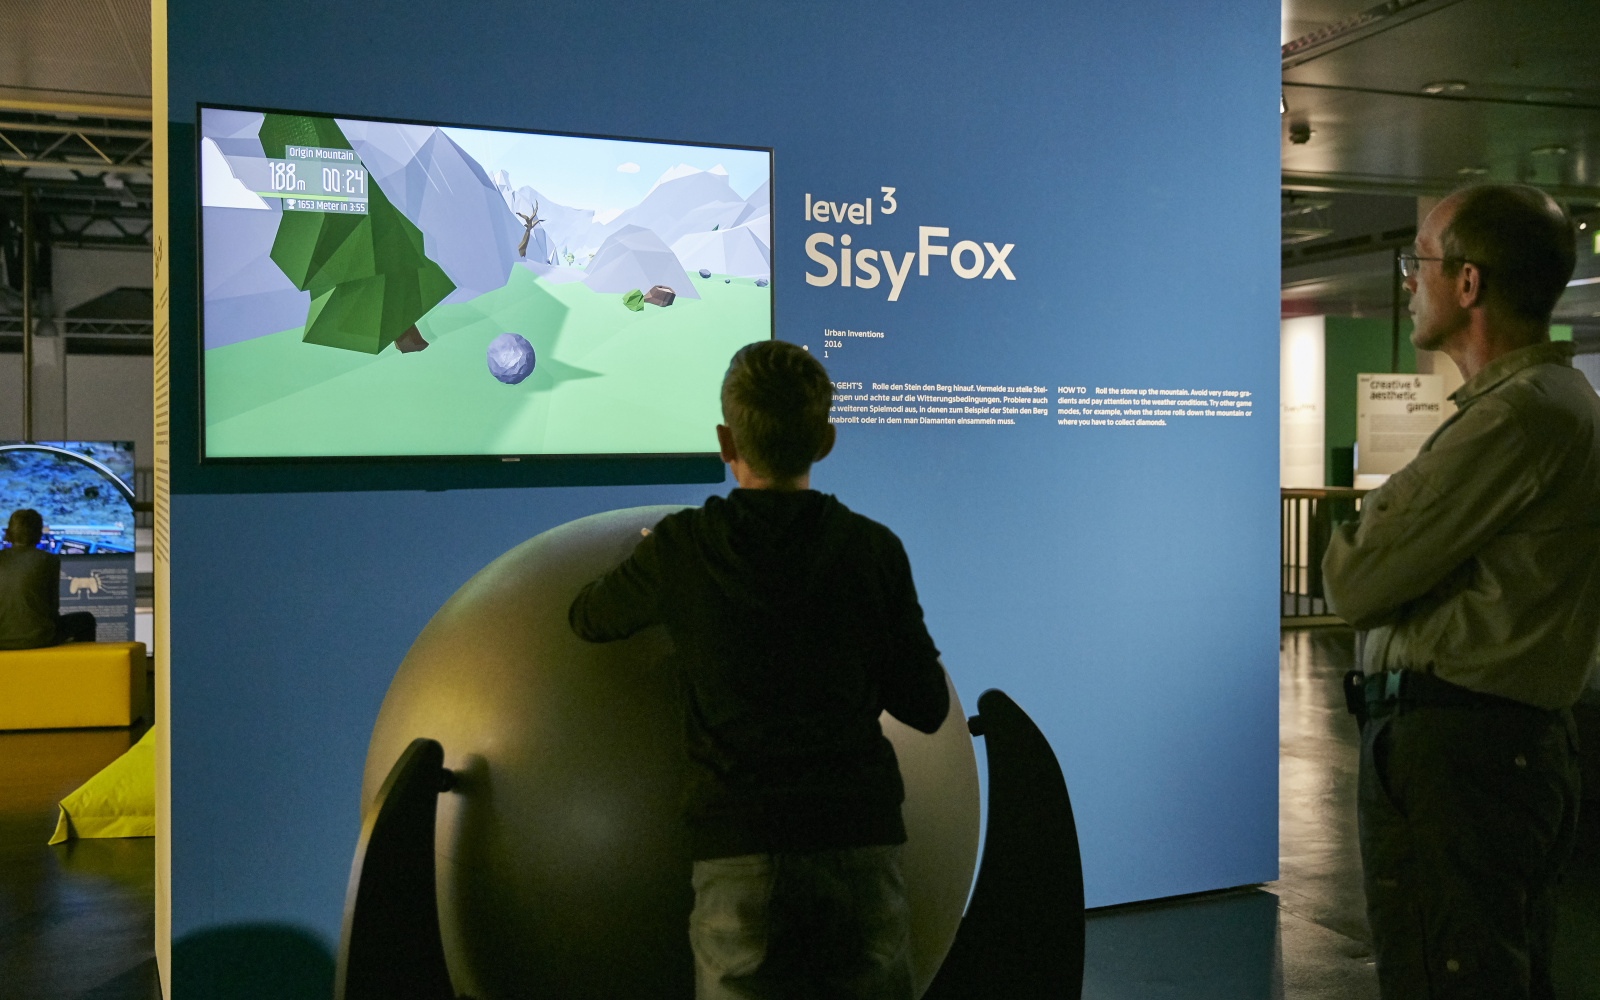 Ein junger Besucher vor einer Spielekonsole bestehend aus einem großen Ball auf einem Gestell. Dahinter ein Bildschirm an einer blauen Wand. Ein weiterer Besucher steht betrachtend daneben. 